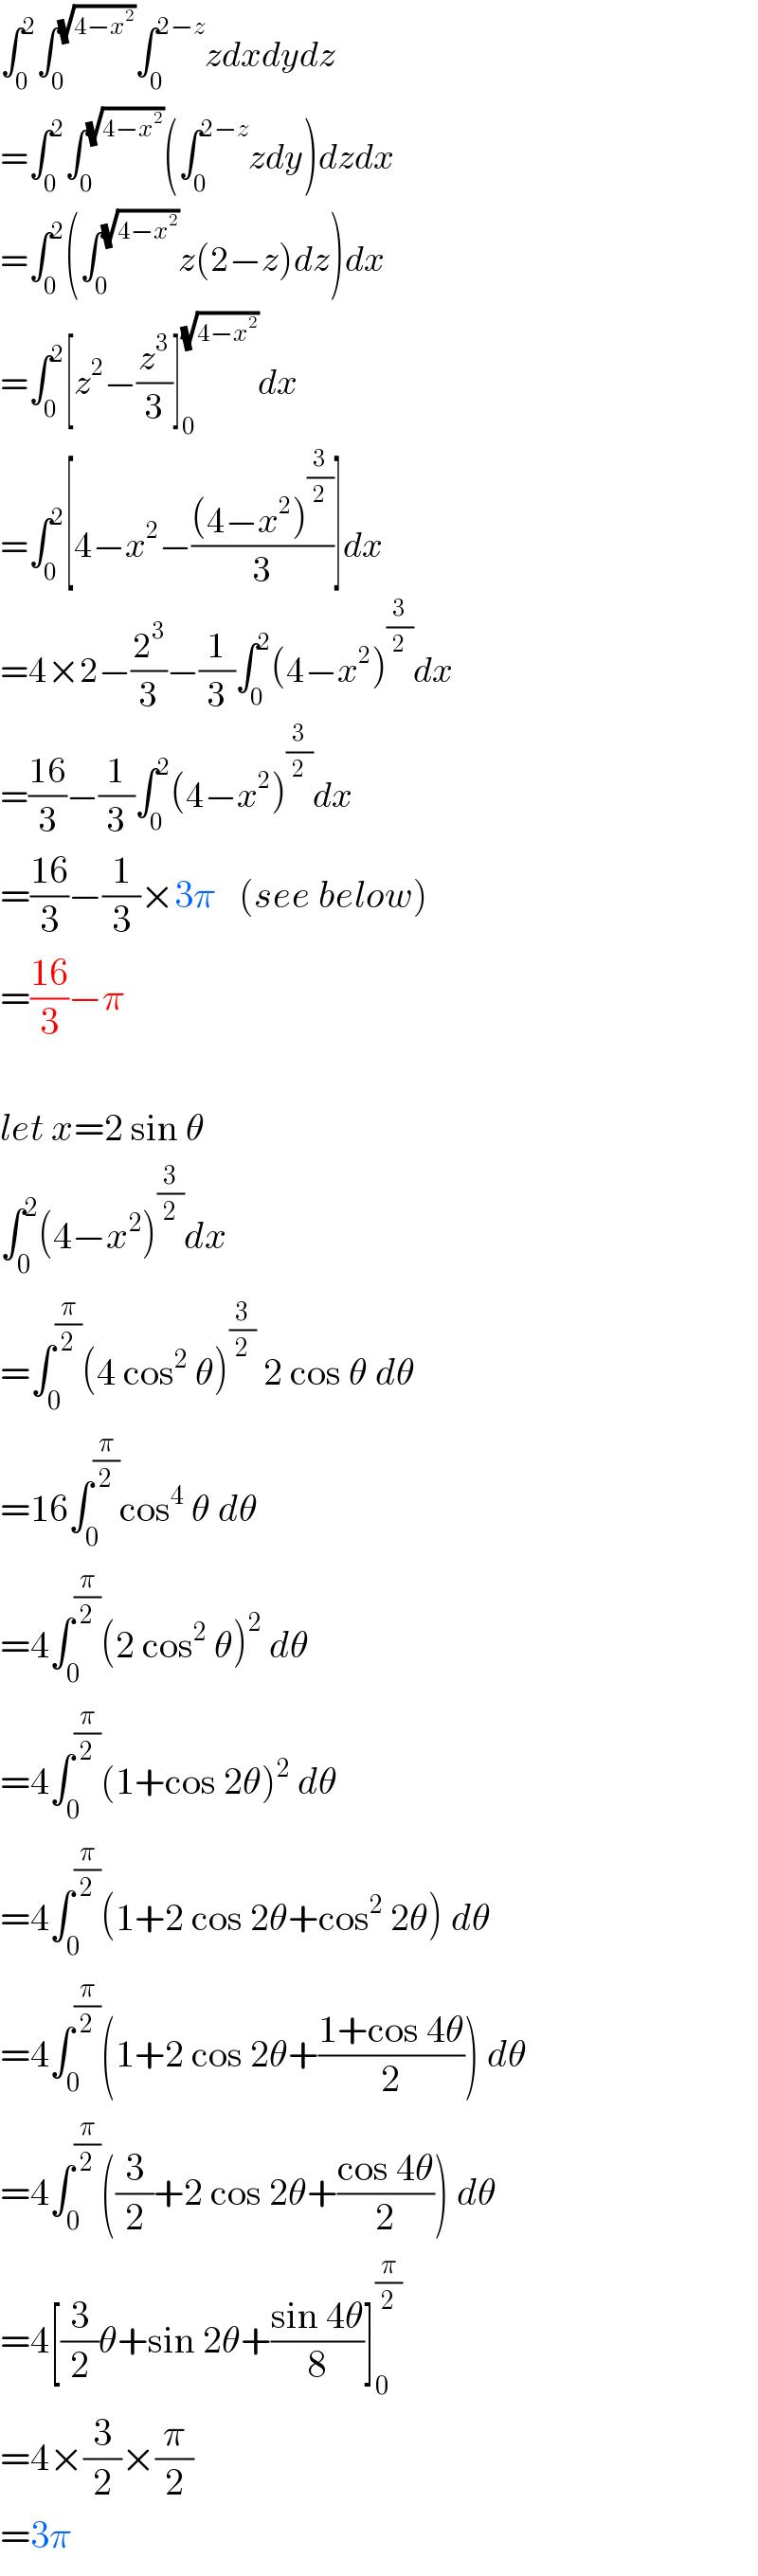 ∫_0 ^2 ∫_0 ^(√(4−x^2 )) ∫_0 ^(2−z) zdxdydz  =∫_0 ^2 ∫_0 ^(√(4−x^2 )) (∫_0 ^(2−z) zdy)dzdx  =∫_0 ^2 (∫_0 ^(√(4−x^2 )) z(2−z)dz)dx  =∫_0 ^2 [z^2 −(z^3 /3)]_0 ^(√(4−x^2 )) dx  =∫_0 ^2 [4−x^2 −(((4−x^2 )^(3/2) )/3)]dx  =4×2−(2^3 /3)−(1/3)∫_0 ^2 (4−x^2 )^(3/2) dx  =((16)/3)−(1/3)∫_0 ^2 (4−x^2 )^(3/2) dx  =((16)/3)−(1/3)×3π   (see below)  =((16)/3)−π    let x=2 sin θ  ∫_0 ^2 (4−x^2 )^(3/2) dx  =∫_0 ^(π/2) (4 cos^2  θ)^(3/2)  2 cos θ dθ  =16∫_0 ^(π/2) cos^4  θ dθ  =4∫_0 ^(π/2) (2 cos^2  θ)^2  dθ  =4∫_0 ^(π/2) (1+cos 2θ)^2  dθ  =4∫_0 ^(π/2) (1+2 cos 2θ+cos^2  2θ) dθ  =4∫_0 ^(π/2) (1+2 cos 2θ+((1+cos 4θ)/2)) dθ  =4∫_0 ^(π/2) ((3/2)+2 cos 2θ+((cos 4θ)/2)) dθ  =4[(3/2)θ+sin 2θ+((sin 4θ)/8)]_0 ^(π/2)   =4×(3/2)×(π/2)  =3π  